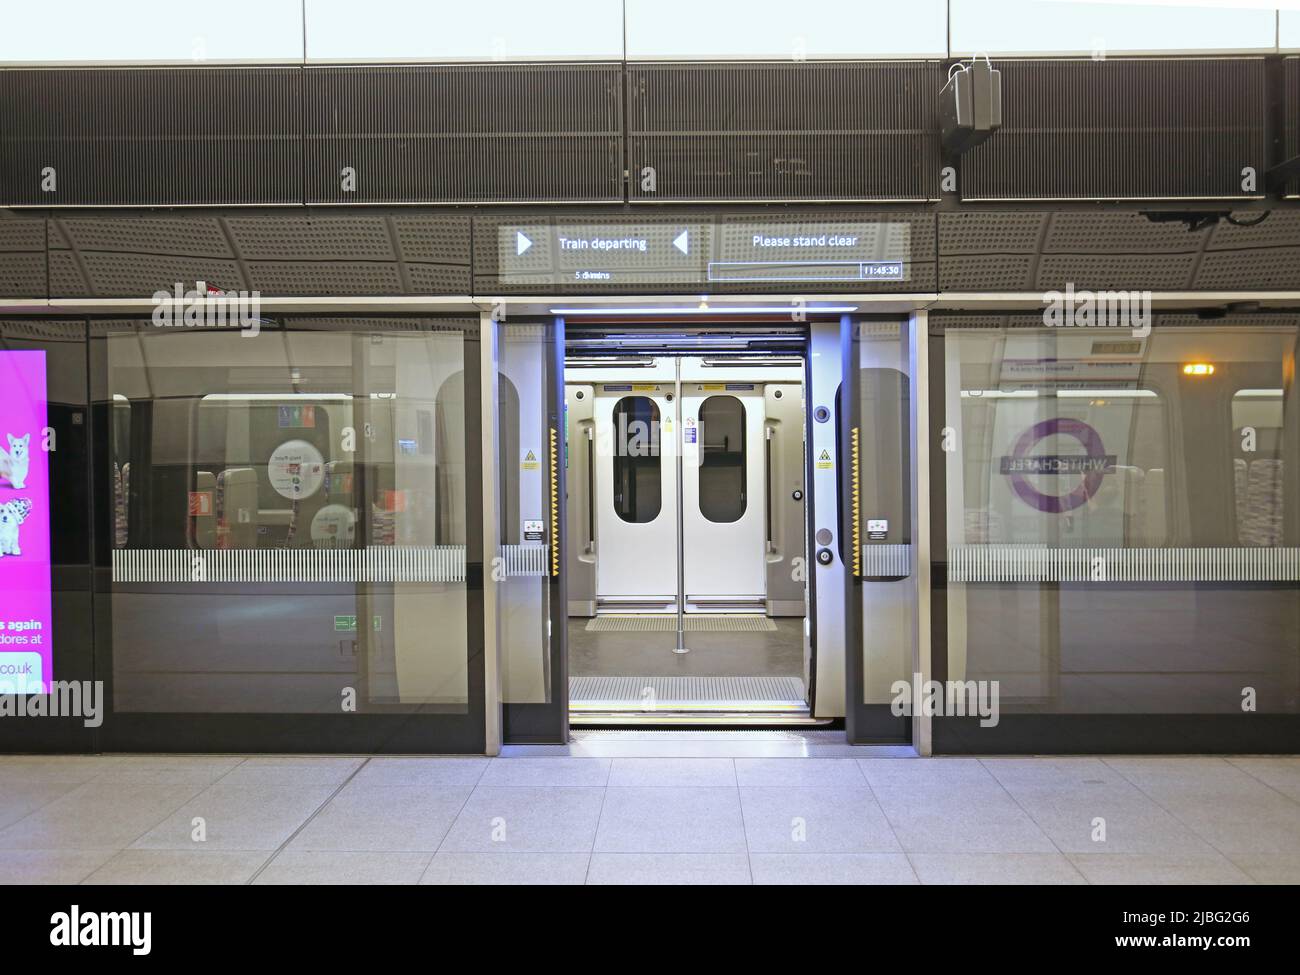 Londra, Regno Unito. Un treno sulla nuova linea Elizabeth (Crossrail) attende alla stazione Whitechapel. Gli sportelli del treno e dello schermo di sicurezza si aprono, sopra il segnale informativo. Foto Stock